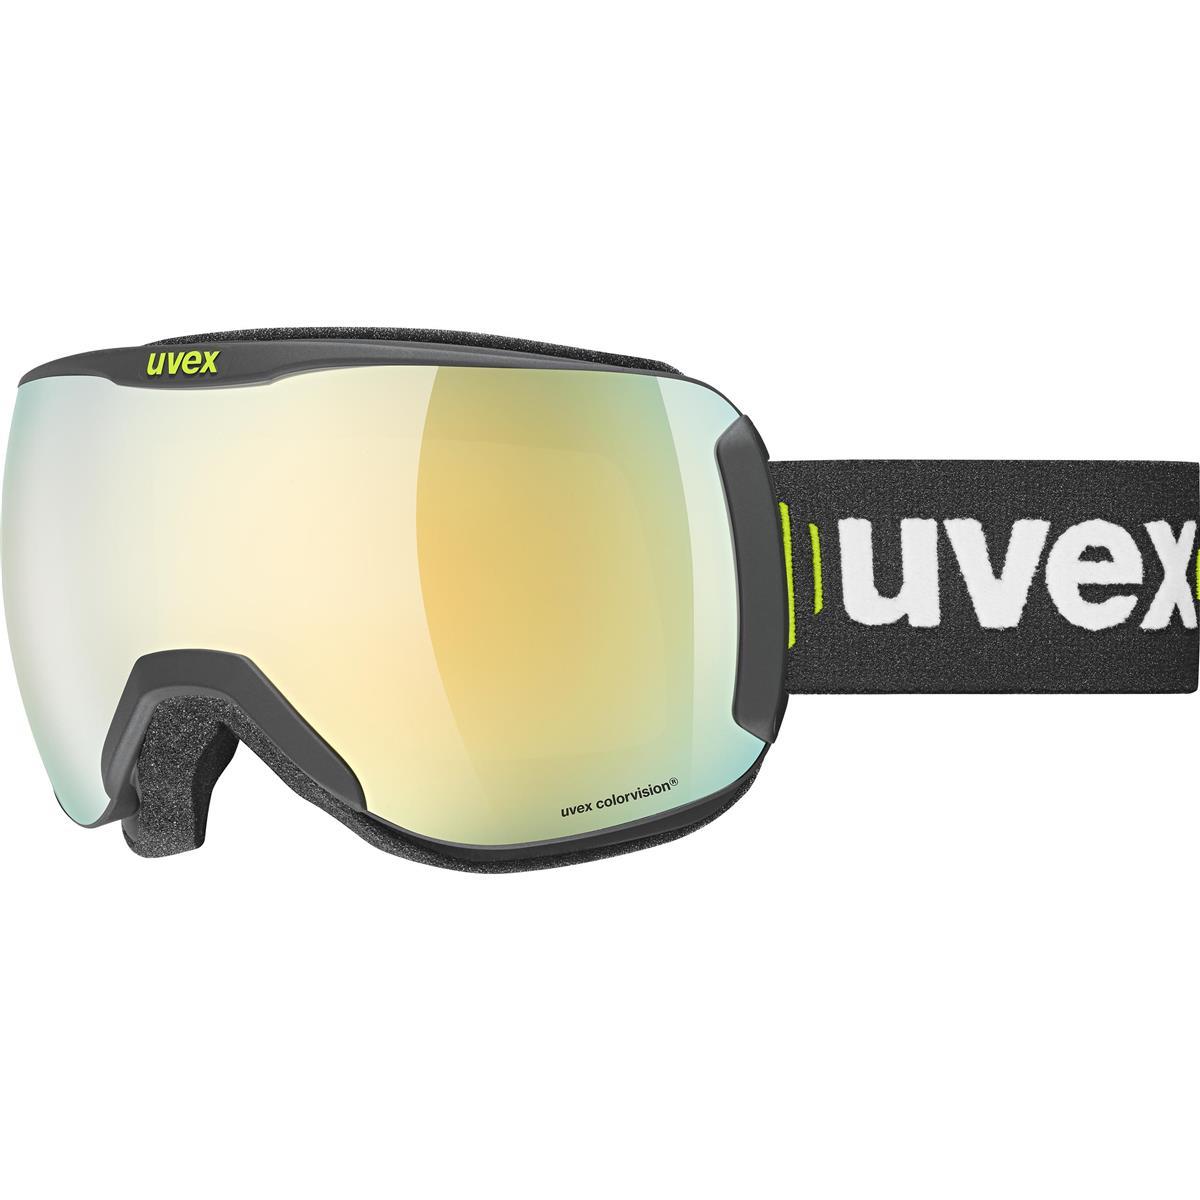 Uvex Downhill 2100 CV Race